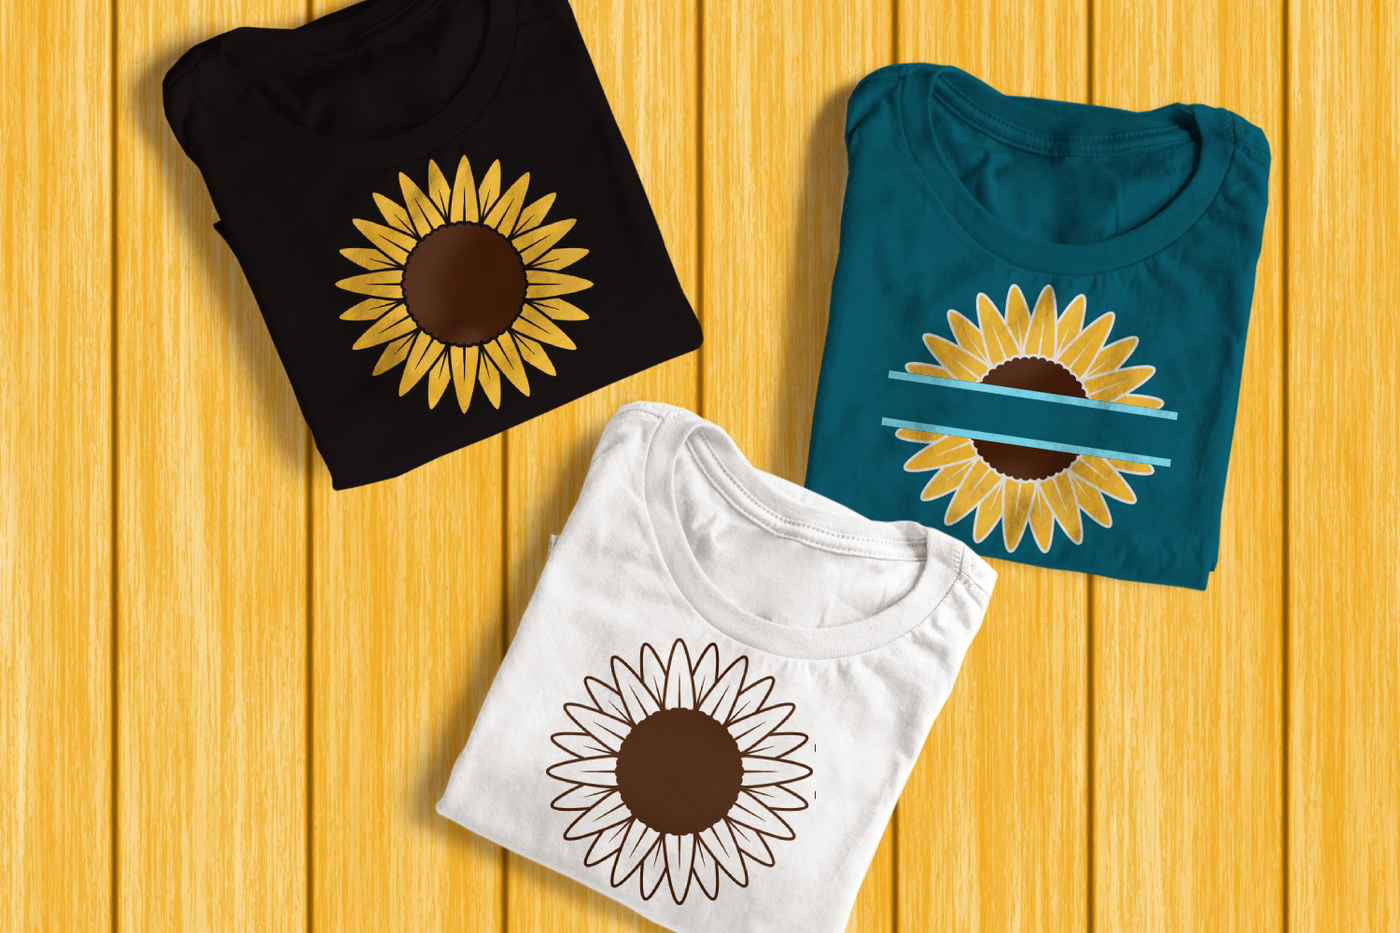 Sunflower and sunflower split design